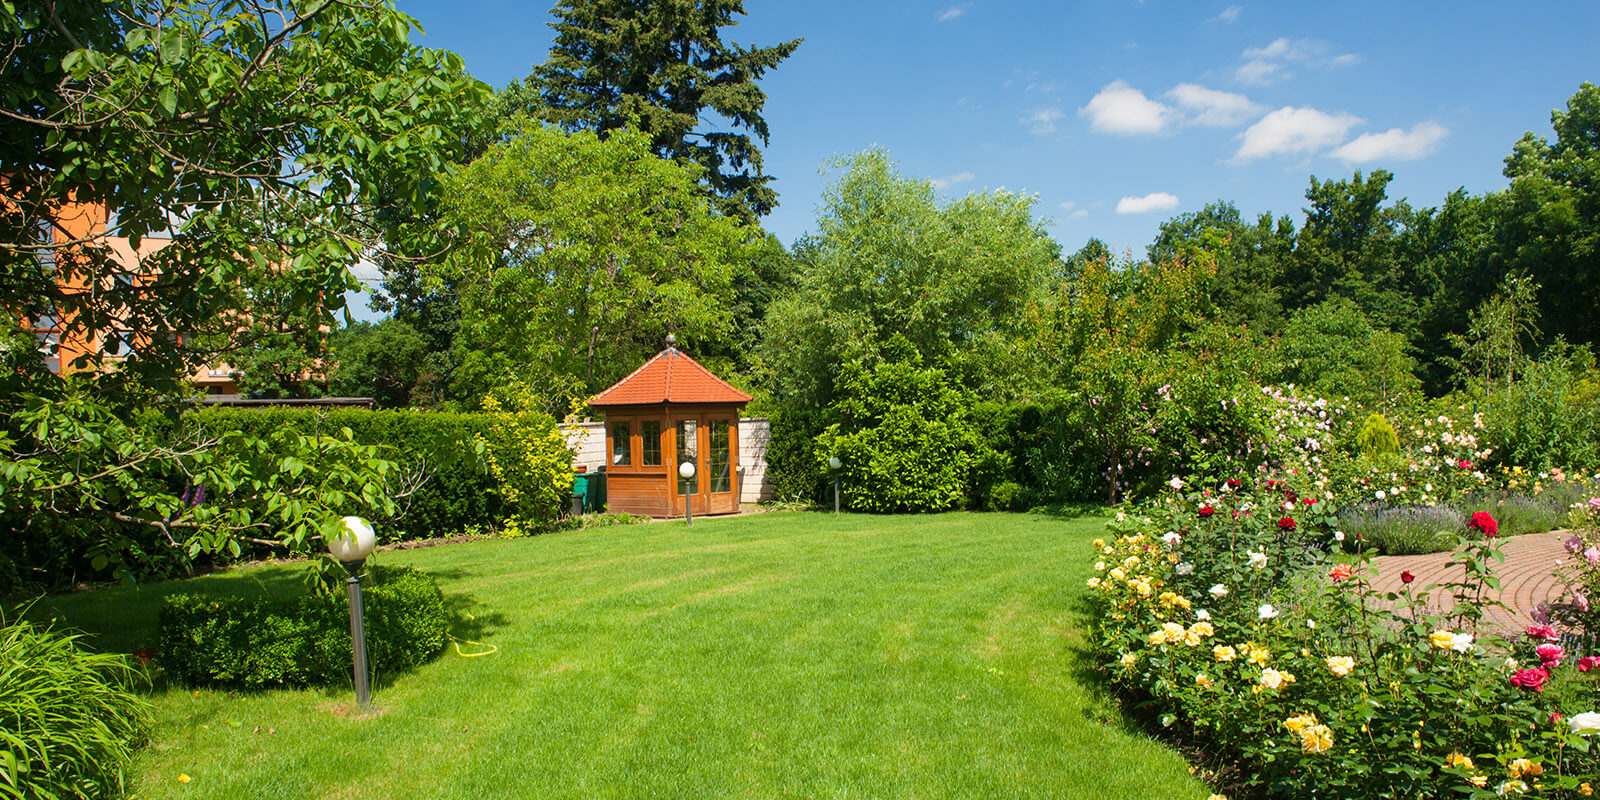 Markert Garten- und Landschaftsbau - Pavillon in gepflegter Gartenanlage